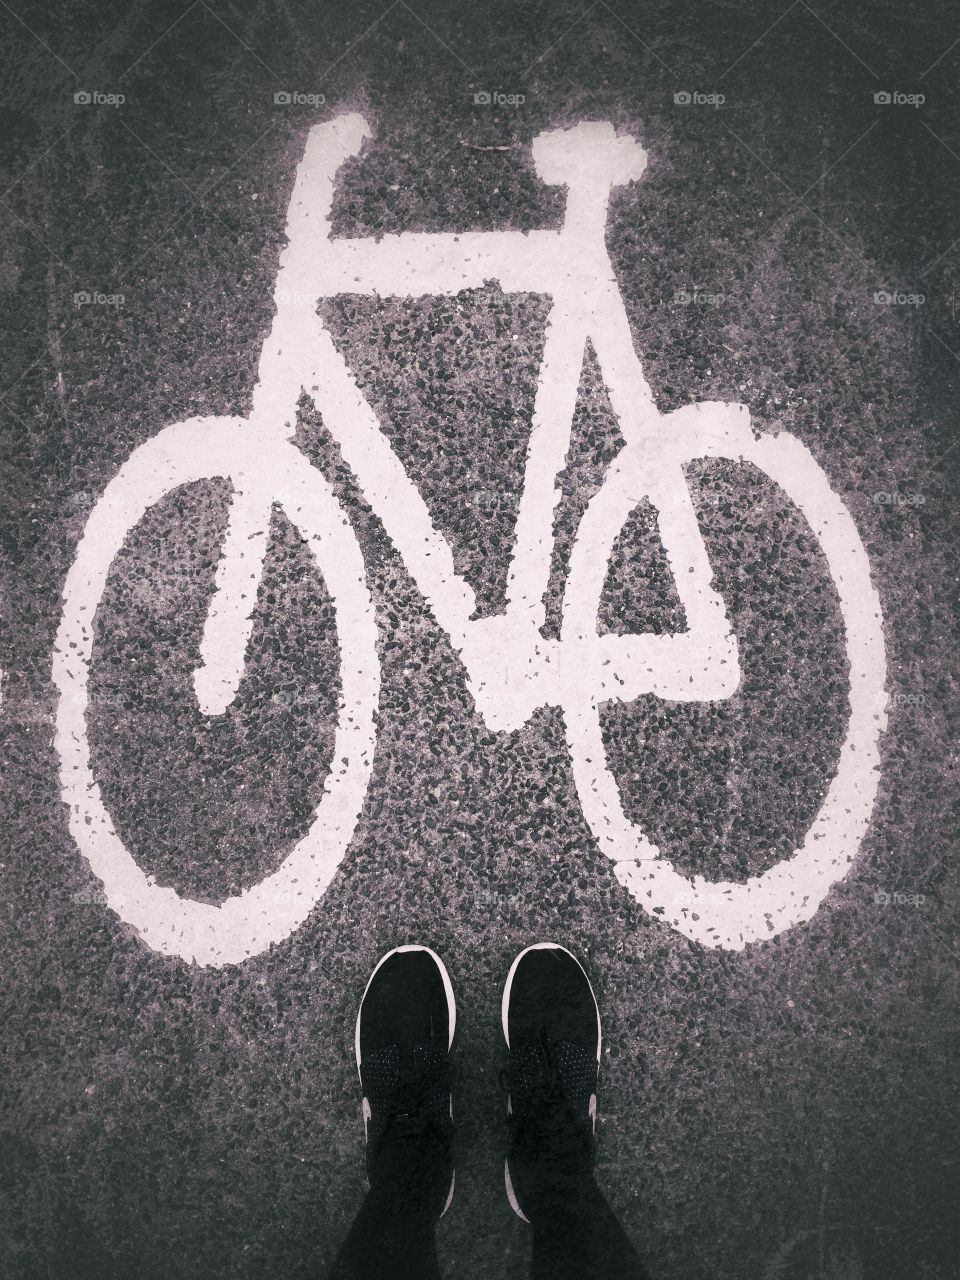 Bike n' feet